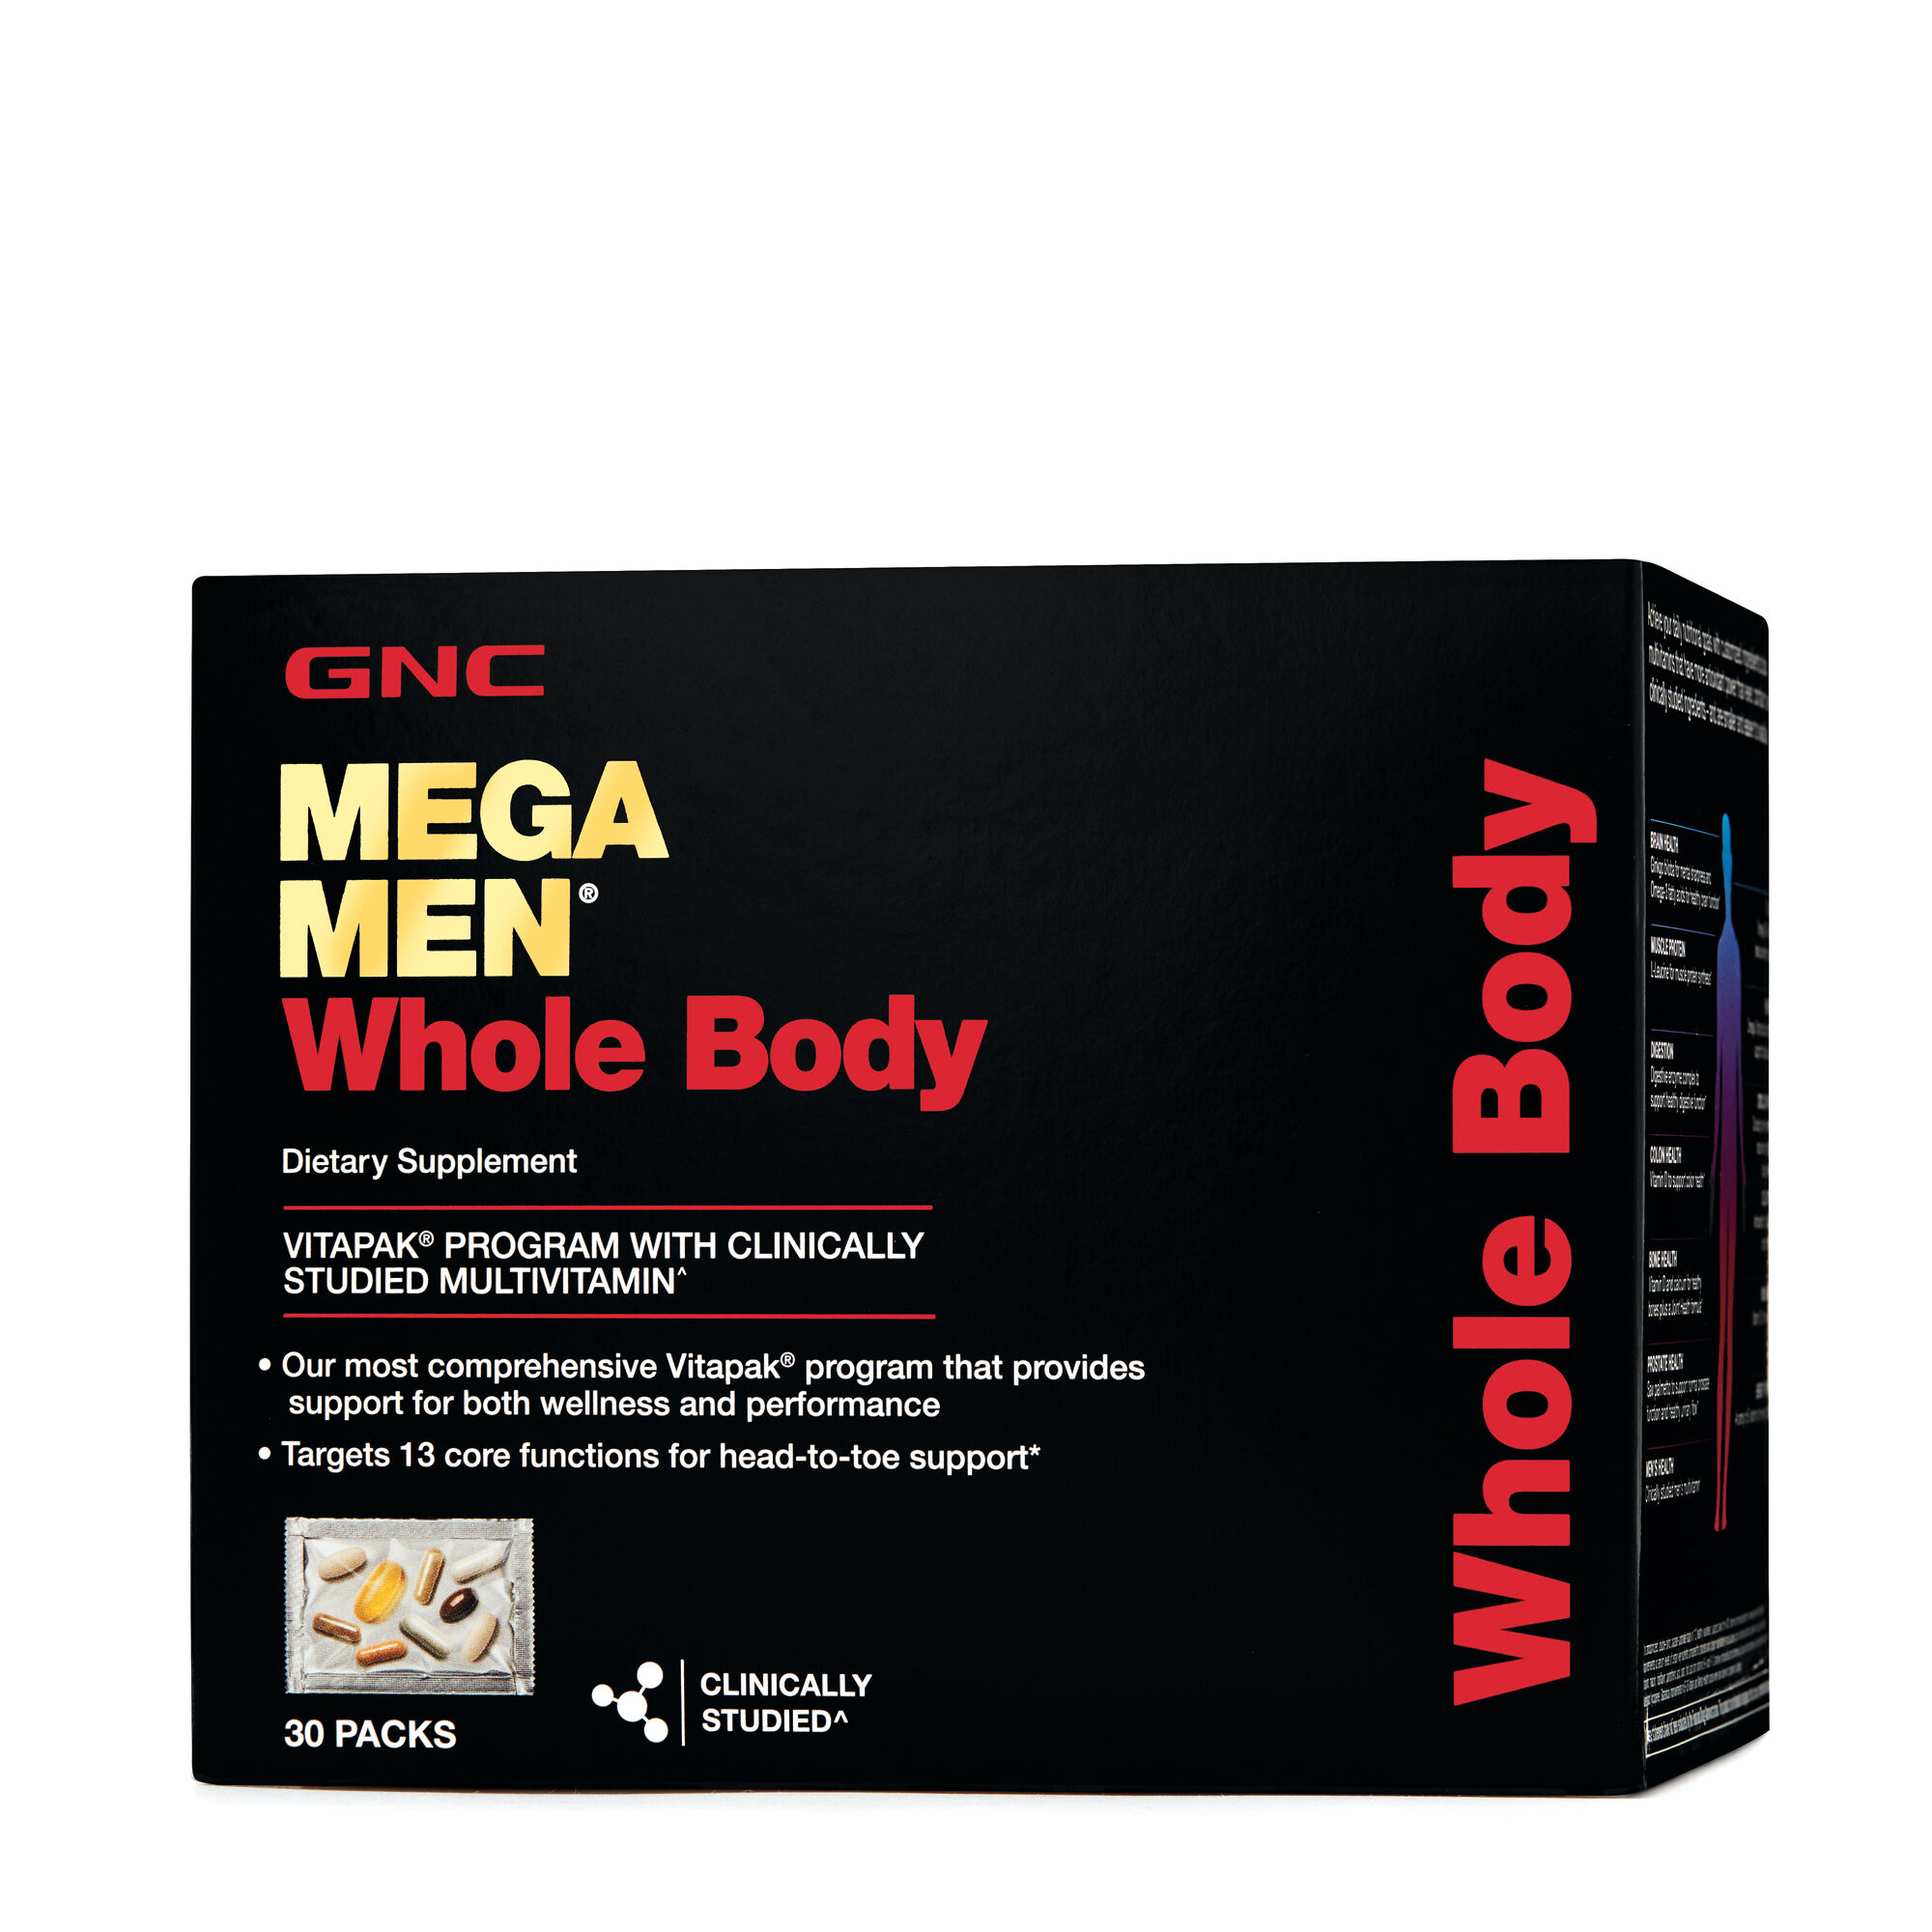 gnc-mega-men-products-deals-coupons-reviews